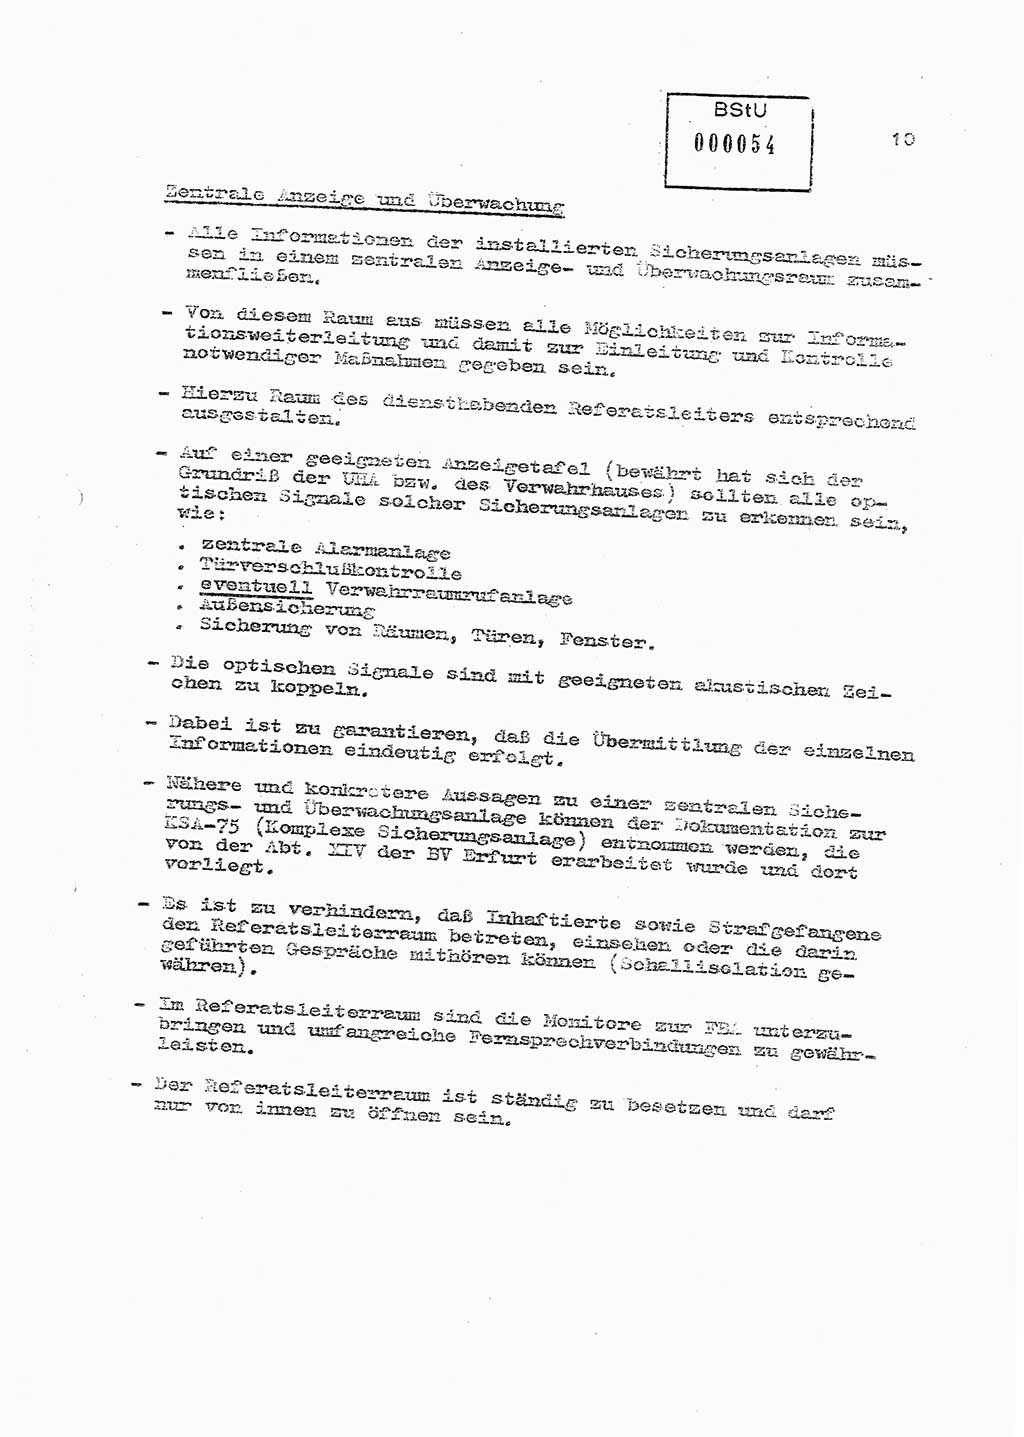 Sicherungs- und Nachrichtentechnik in UHA [Untersuchungshaftanstalten, Ministerium für Staatssicherheit, Deutsche Demokratische Republik (DDR)], Abteilung (Abt.) ⅩⅣ, Berlin 1980, Seite 10 (Si.-NT UHA MfS DDR Abt. ⅩⅣ /80 1980, S. 10)